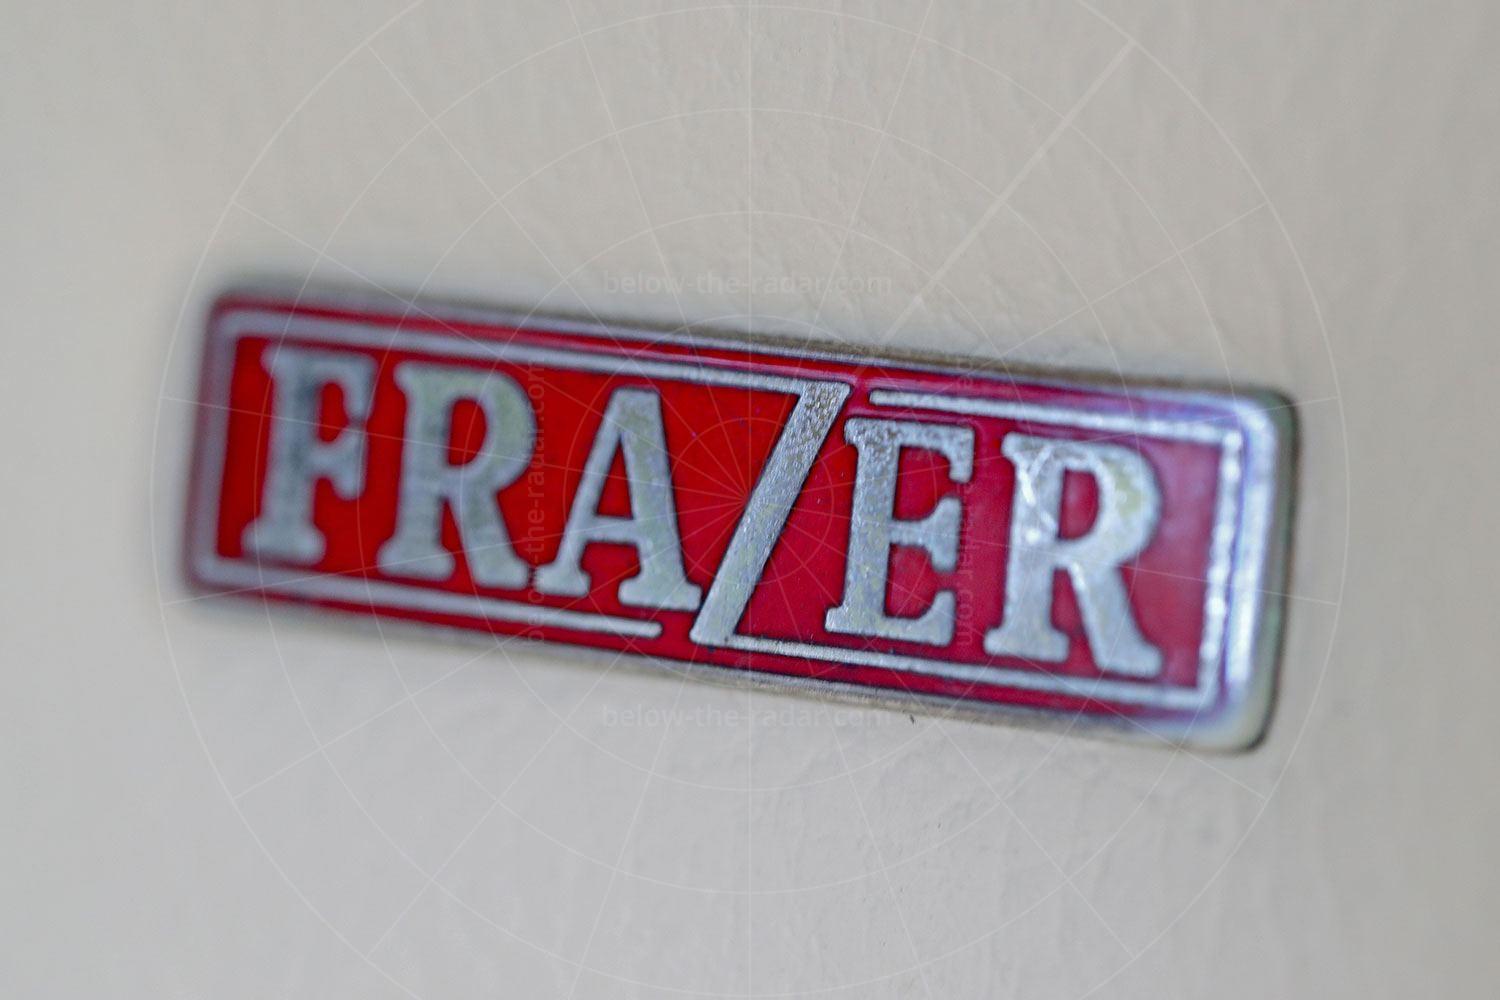 Frazer badge Pic: magiccarpics.co.uk | 